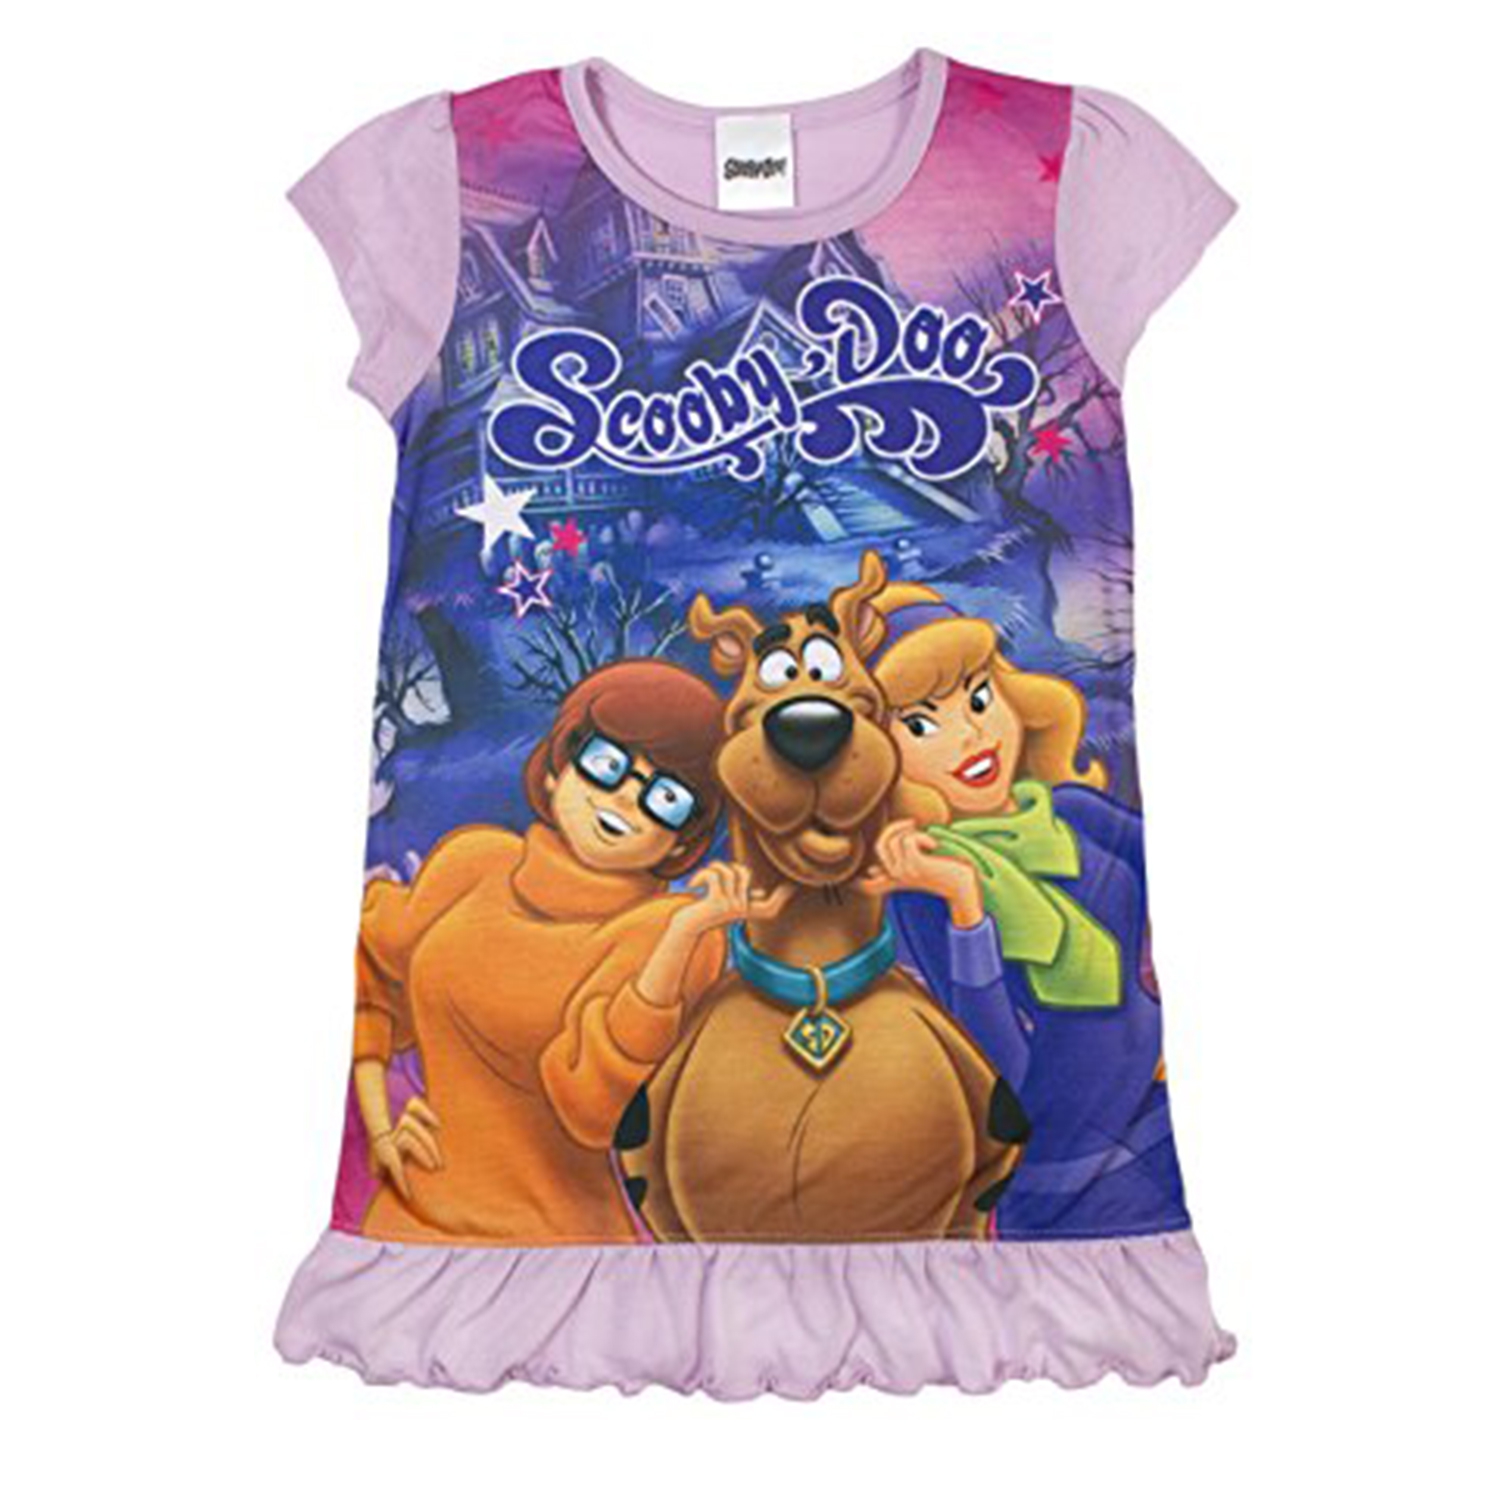 Scooby Doo 'Girls' Nightie 2 3 Years